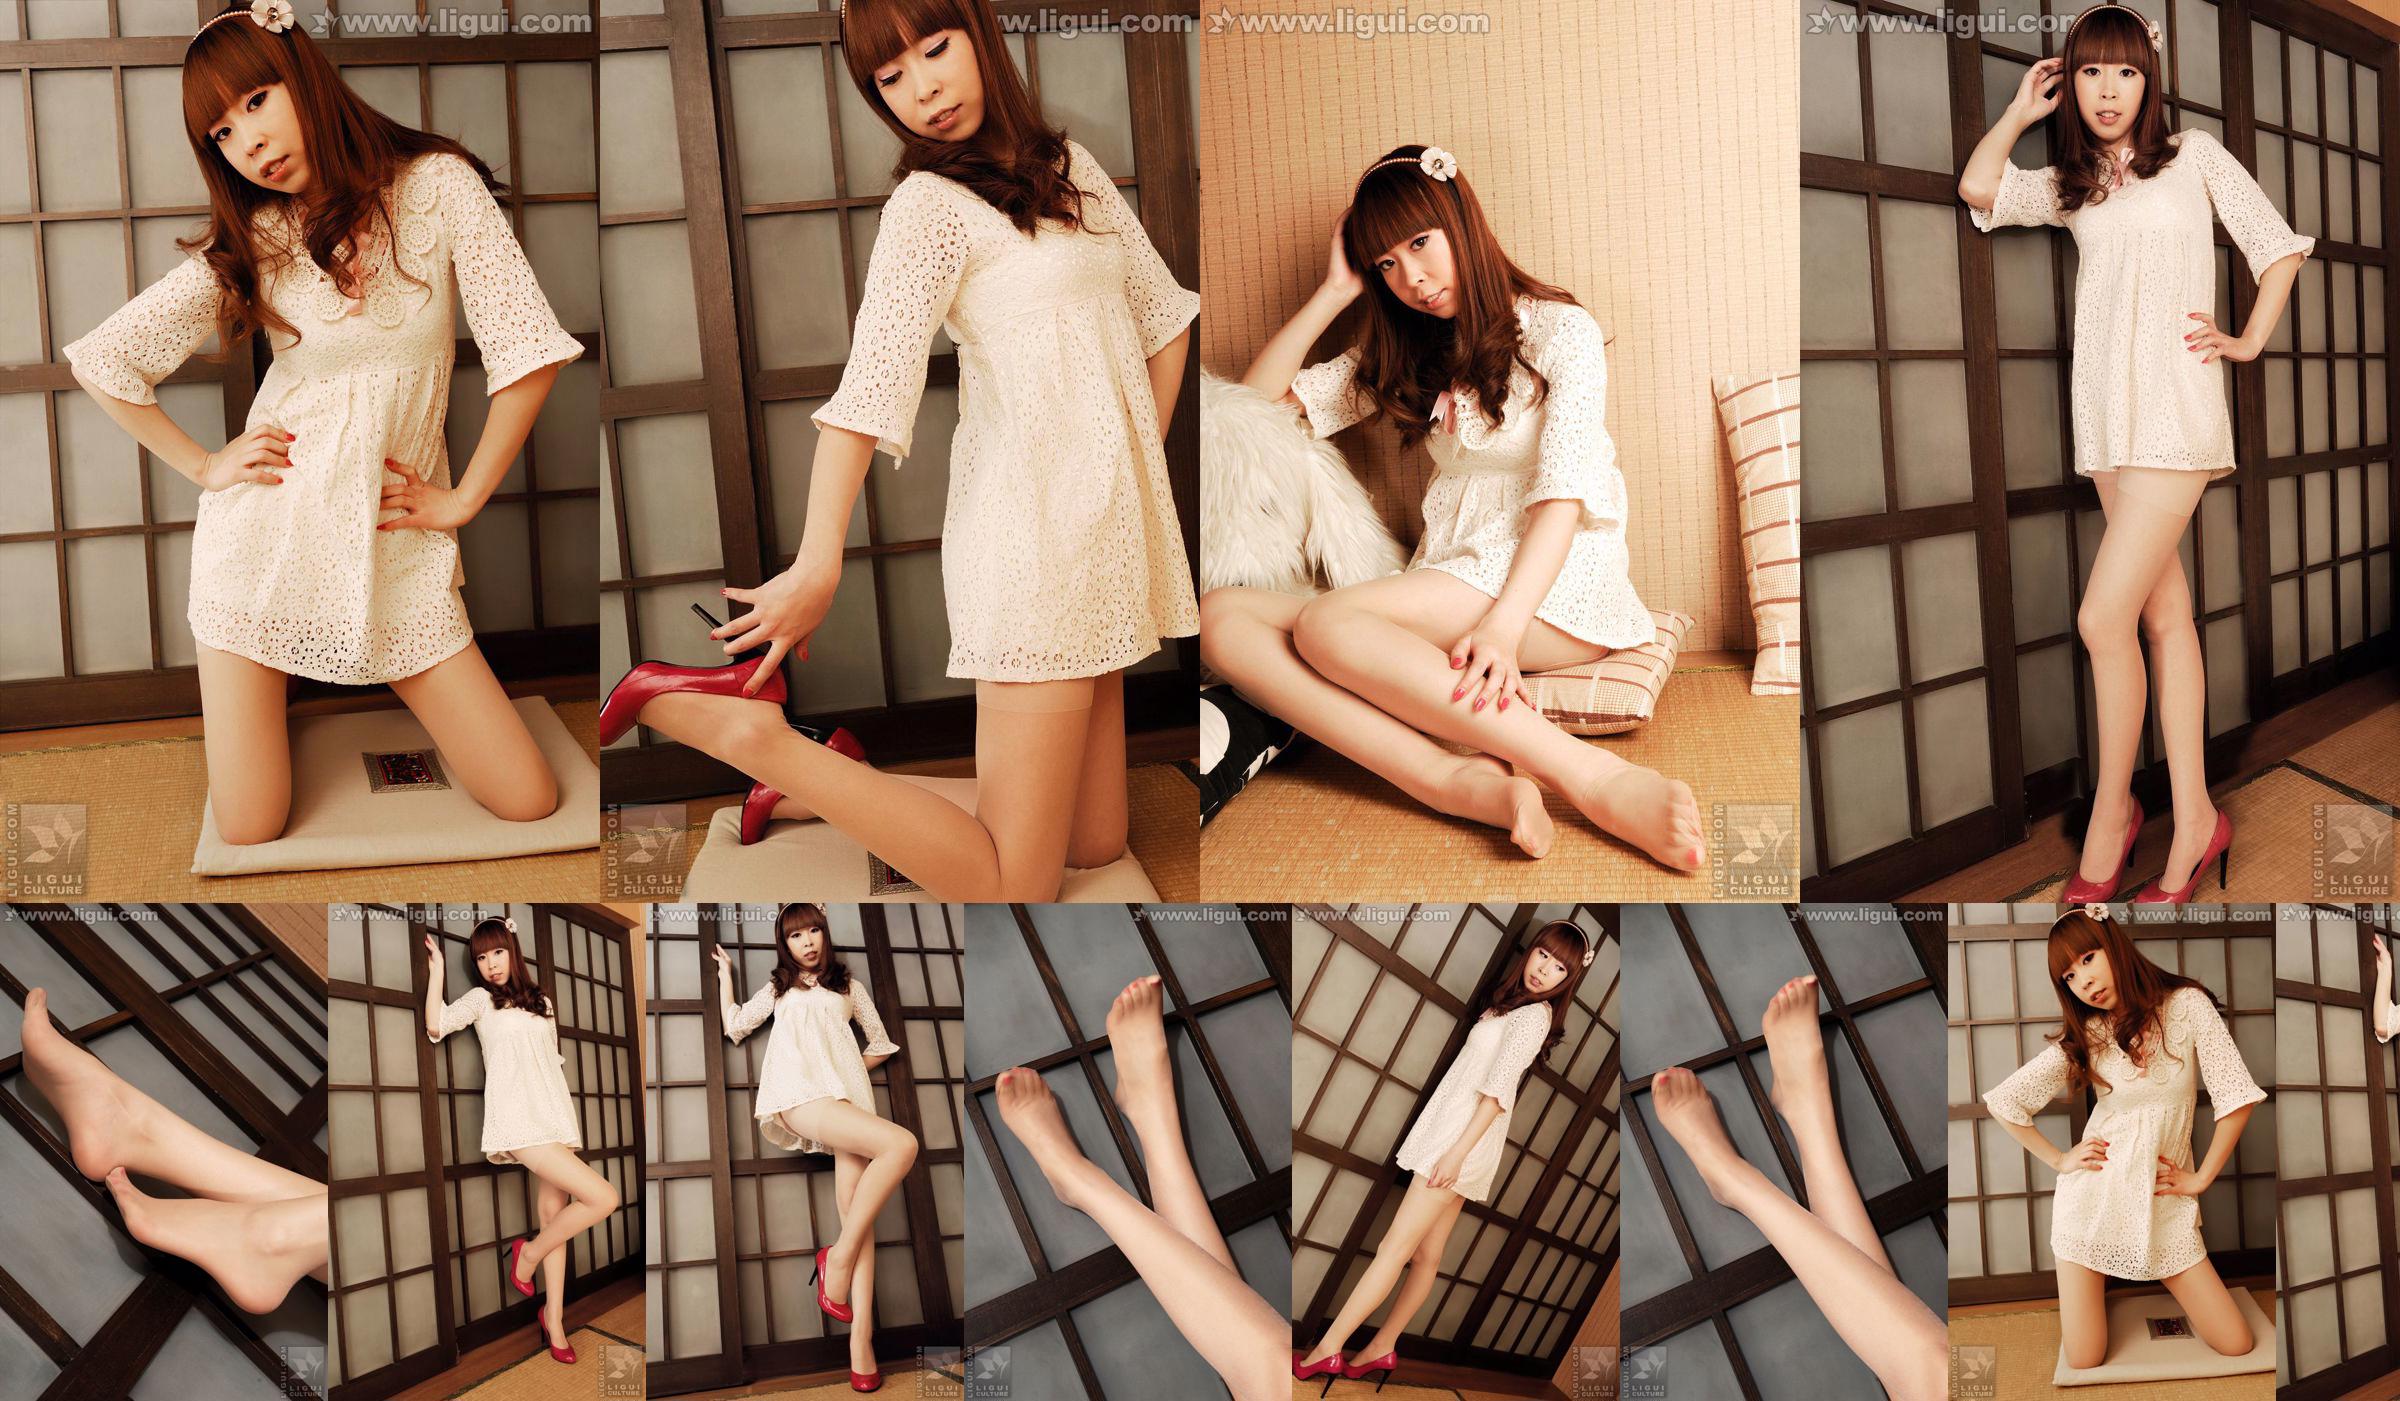 Modelo Vikcy "La tentación del estilo japonés" [丽 柜 LiGui] Fotos de piernas hermosas y pie de jade No.00af56 Página 2